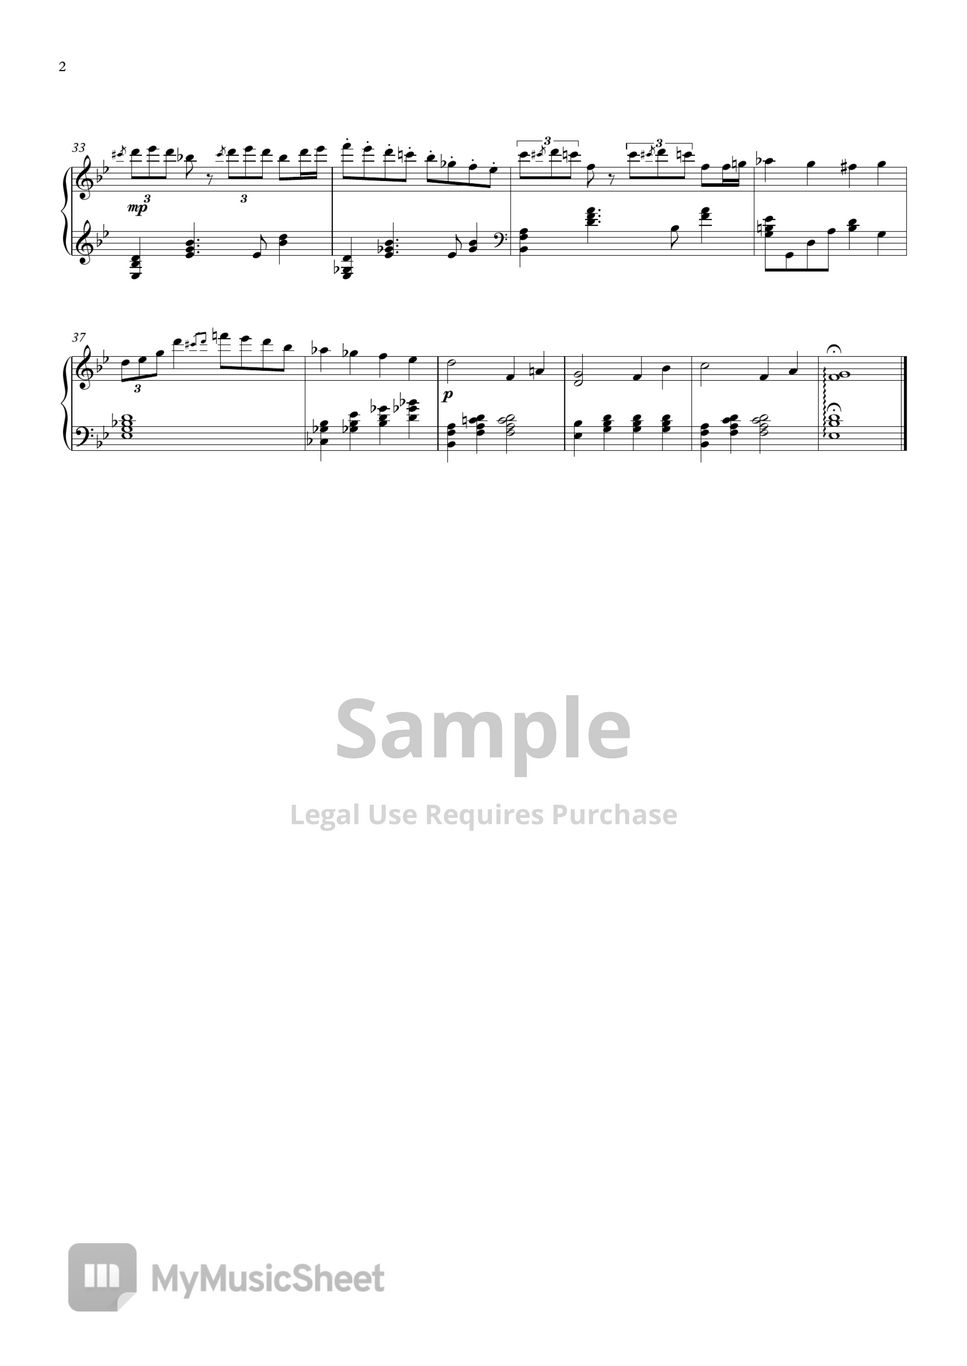 碧蓝档案 - 「忘れられた神々のためのキリエ」Theme 3 (钢琴版) by Singulfer-小言